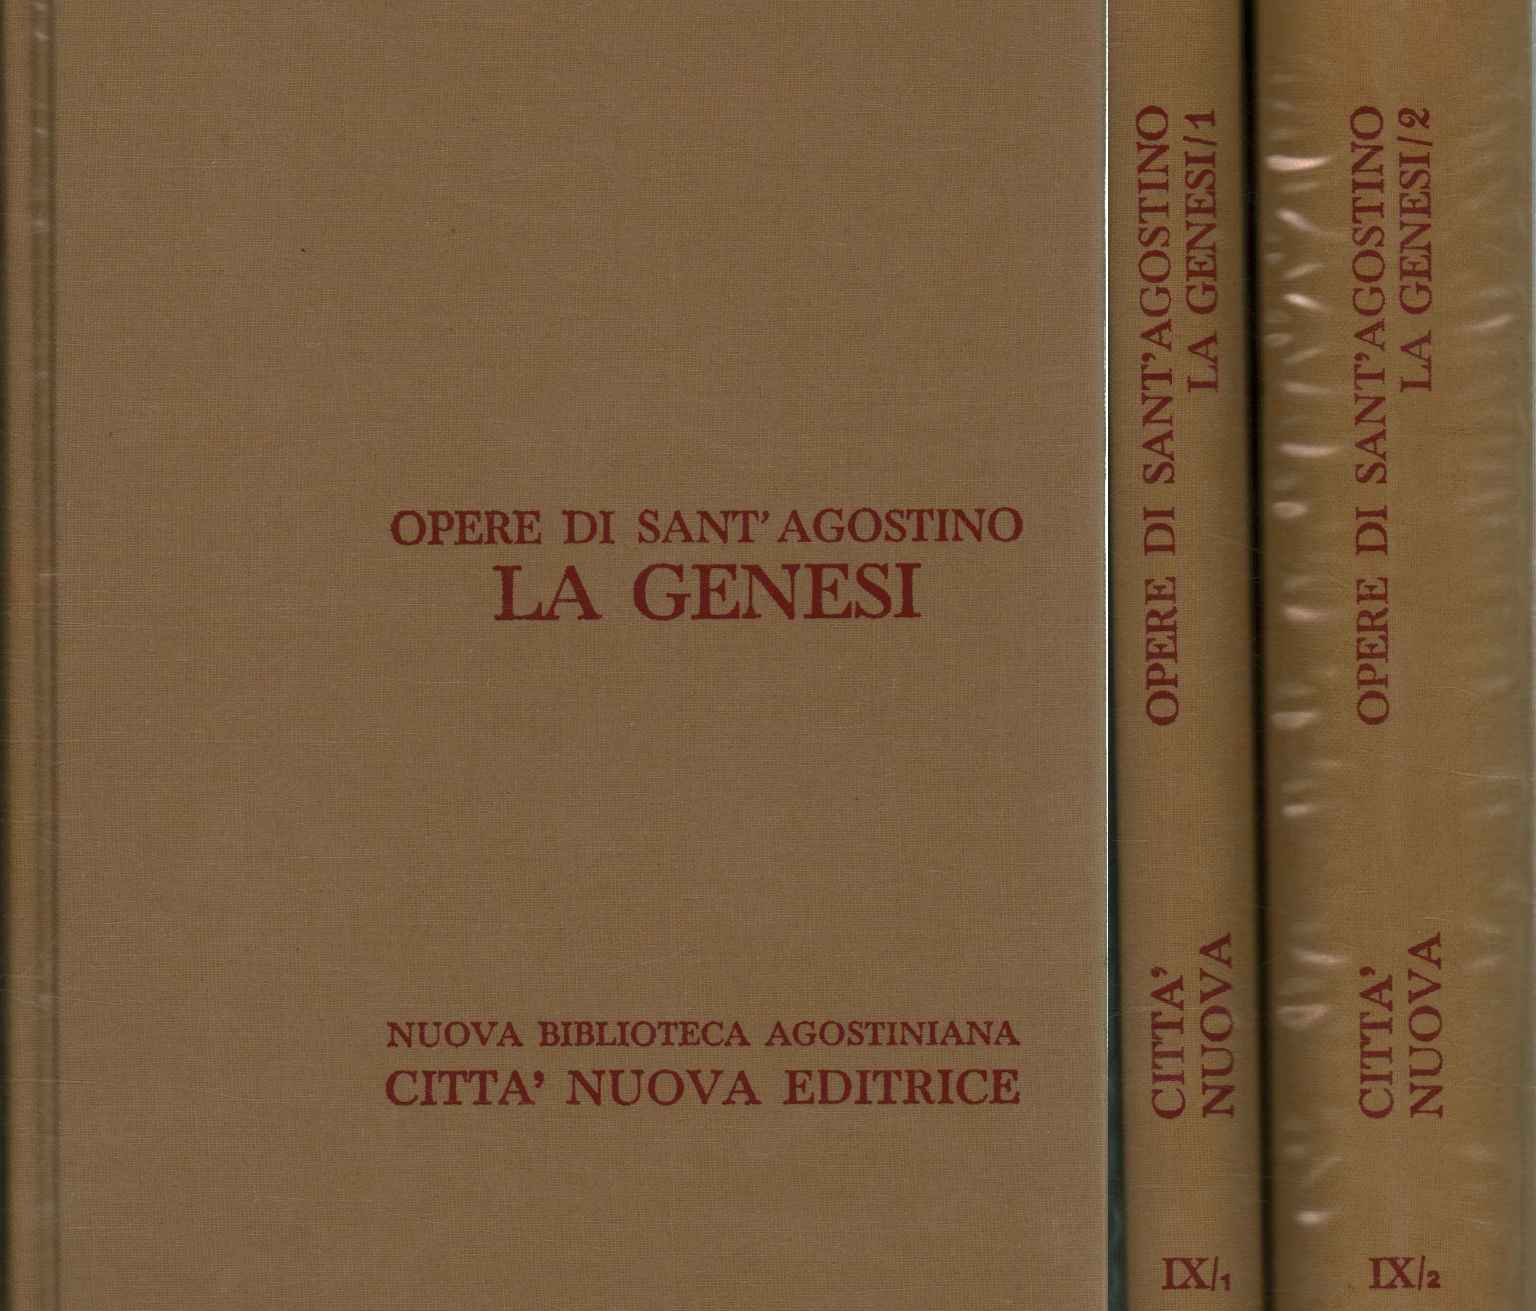 Werke des Heiligen Augustinus. Gen